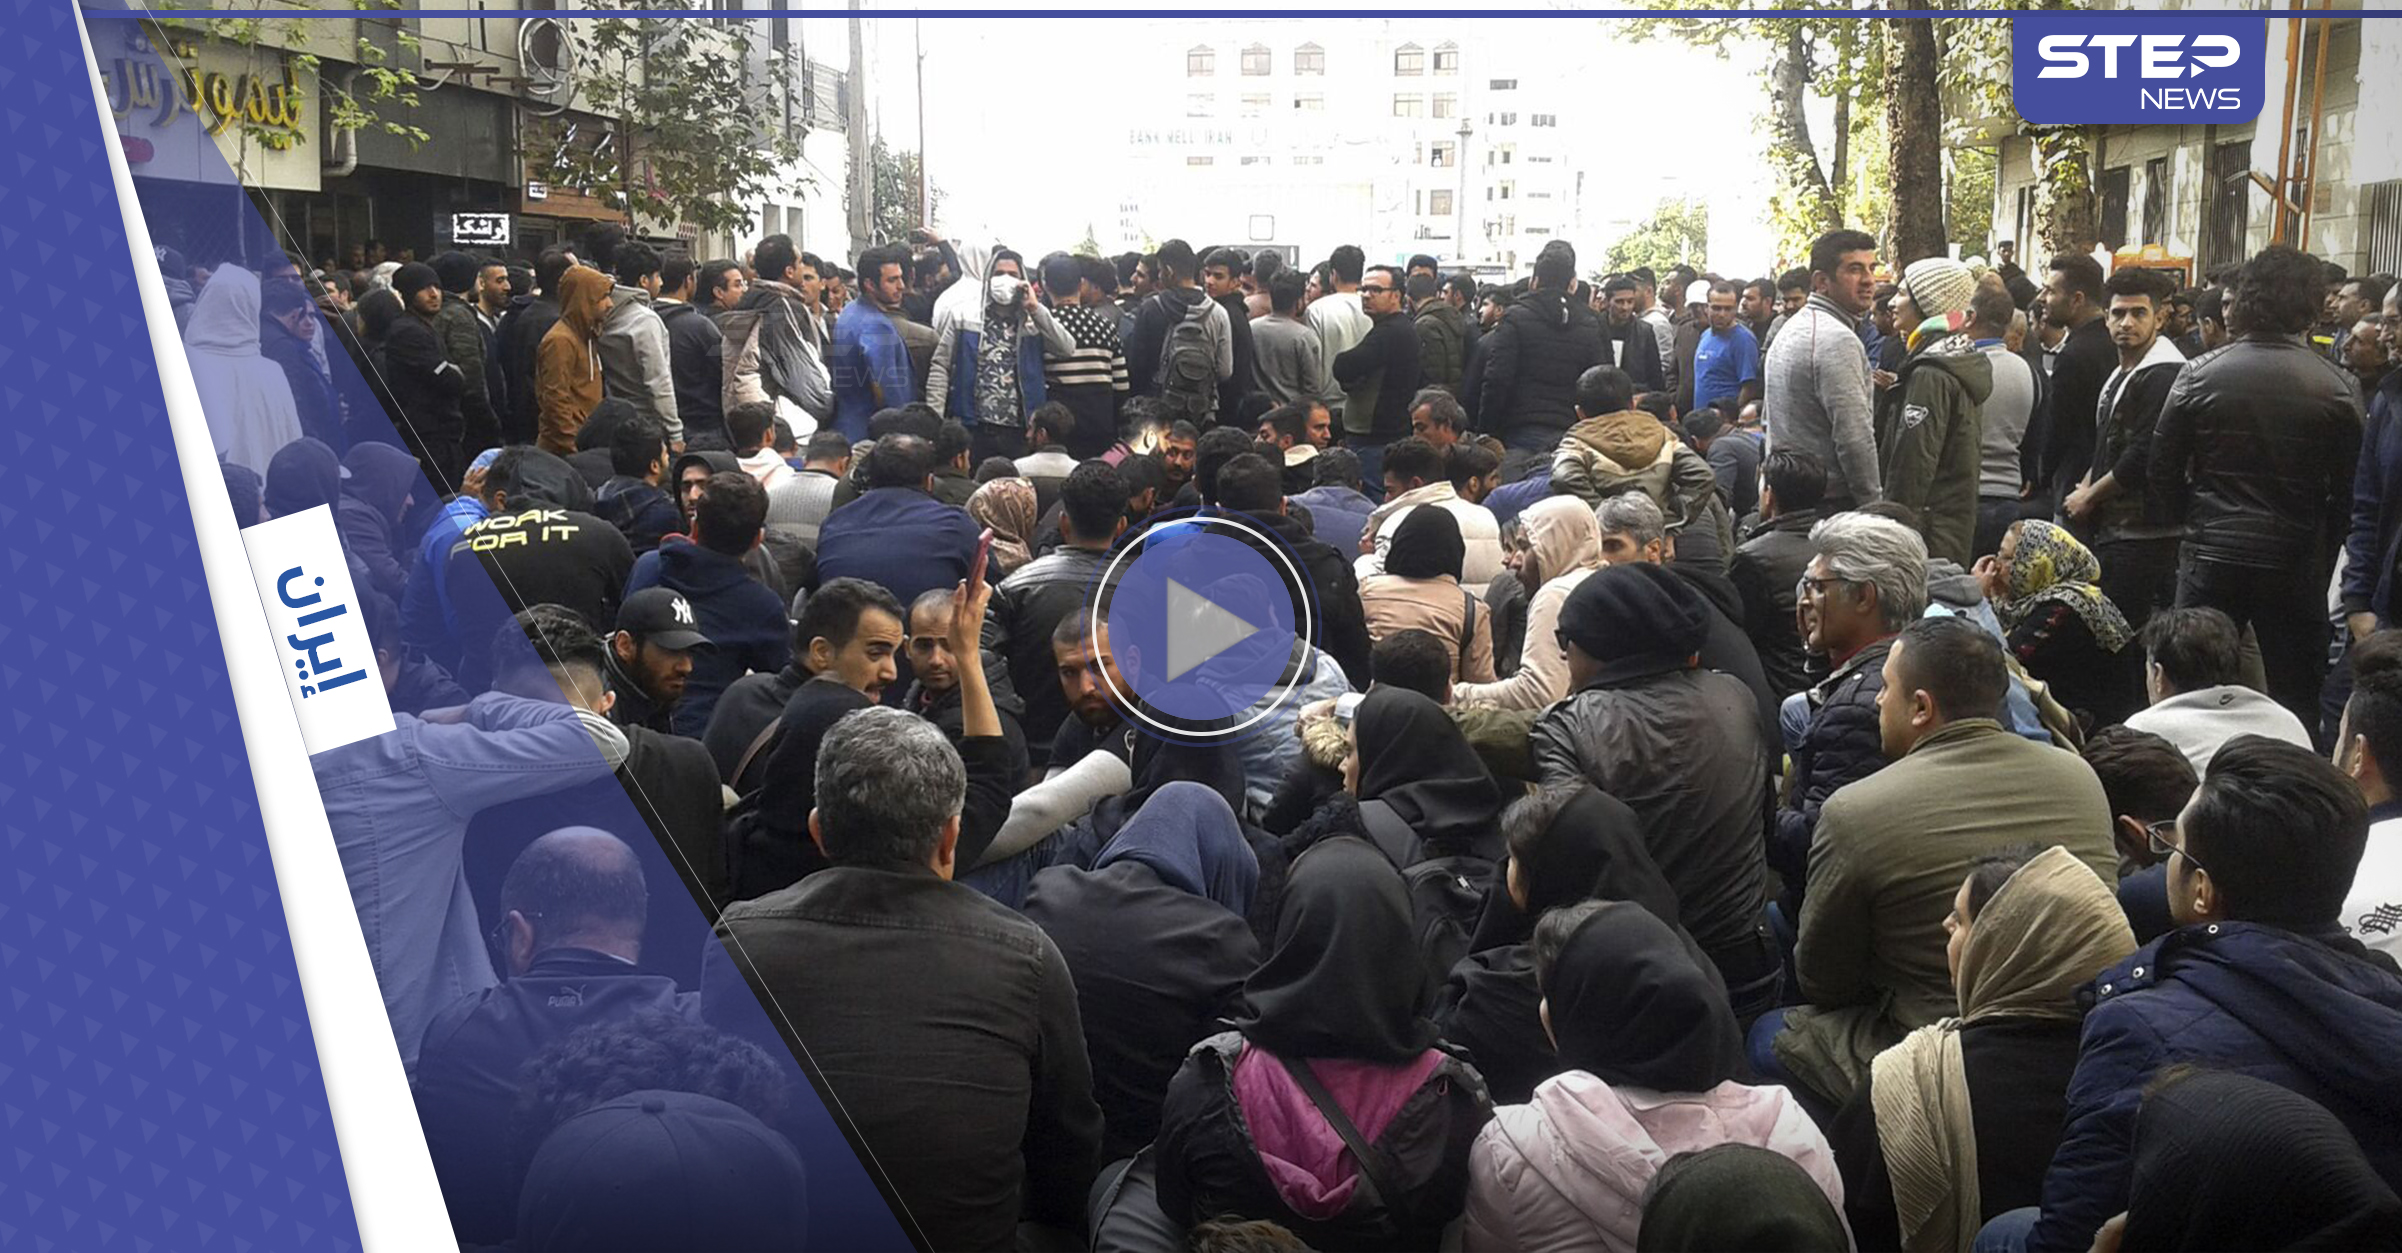 بالفيديو|| بخطوة نادرة متظاهرون يحرقون مركزاً لـ "الباسيج" في إيران.. والسلطات تعتقل السينمائيين وتصادر الكاميرات